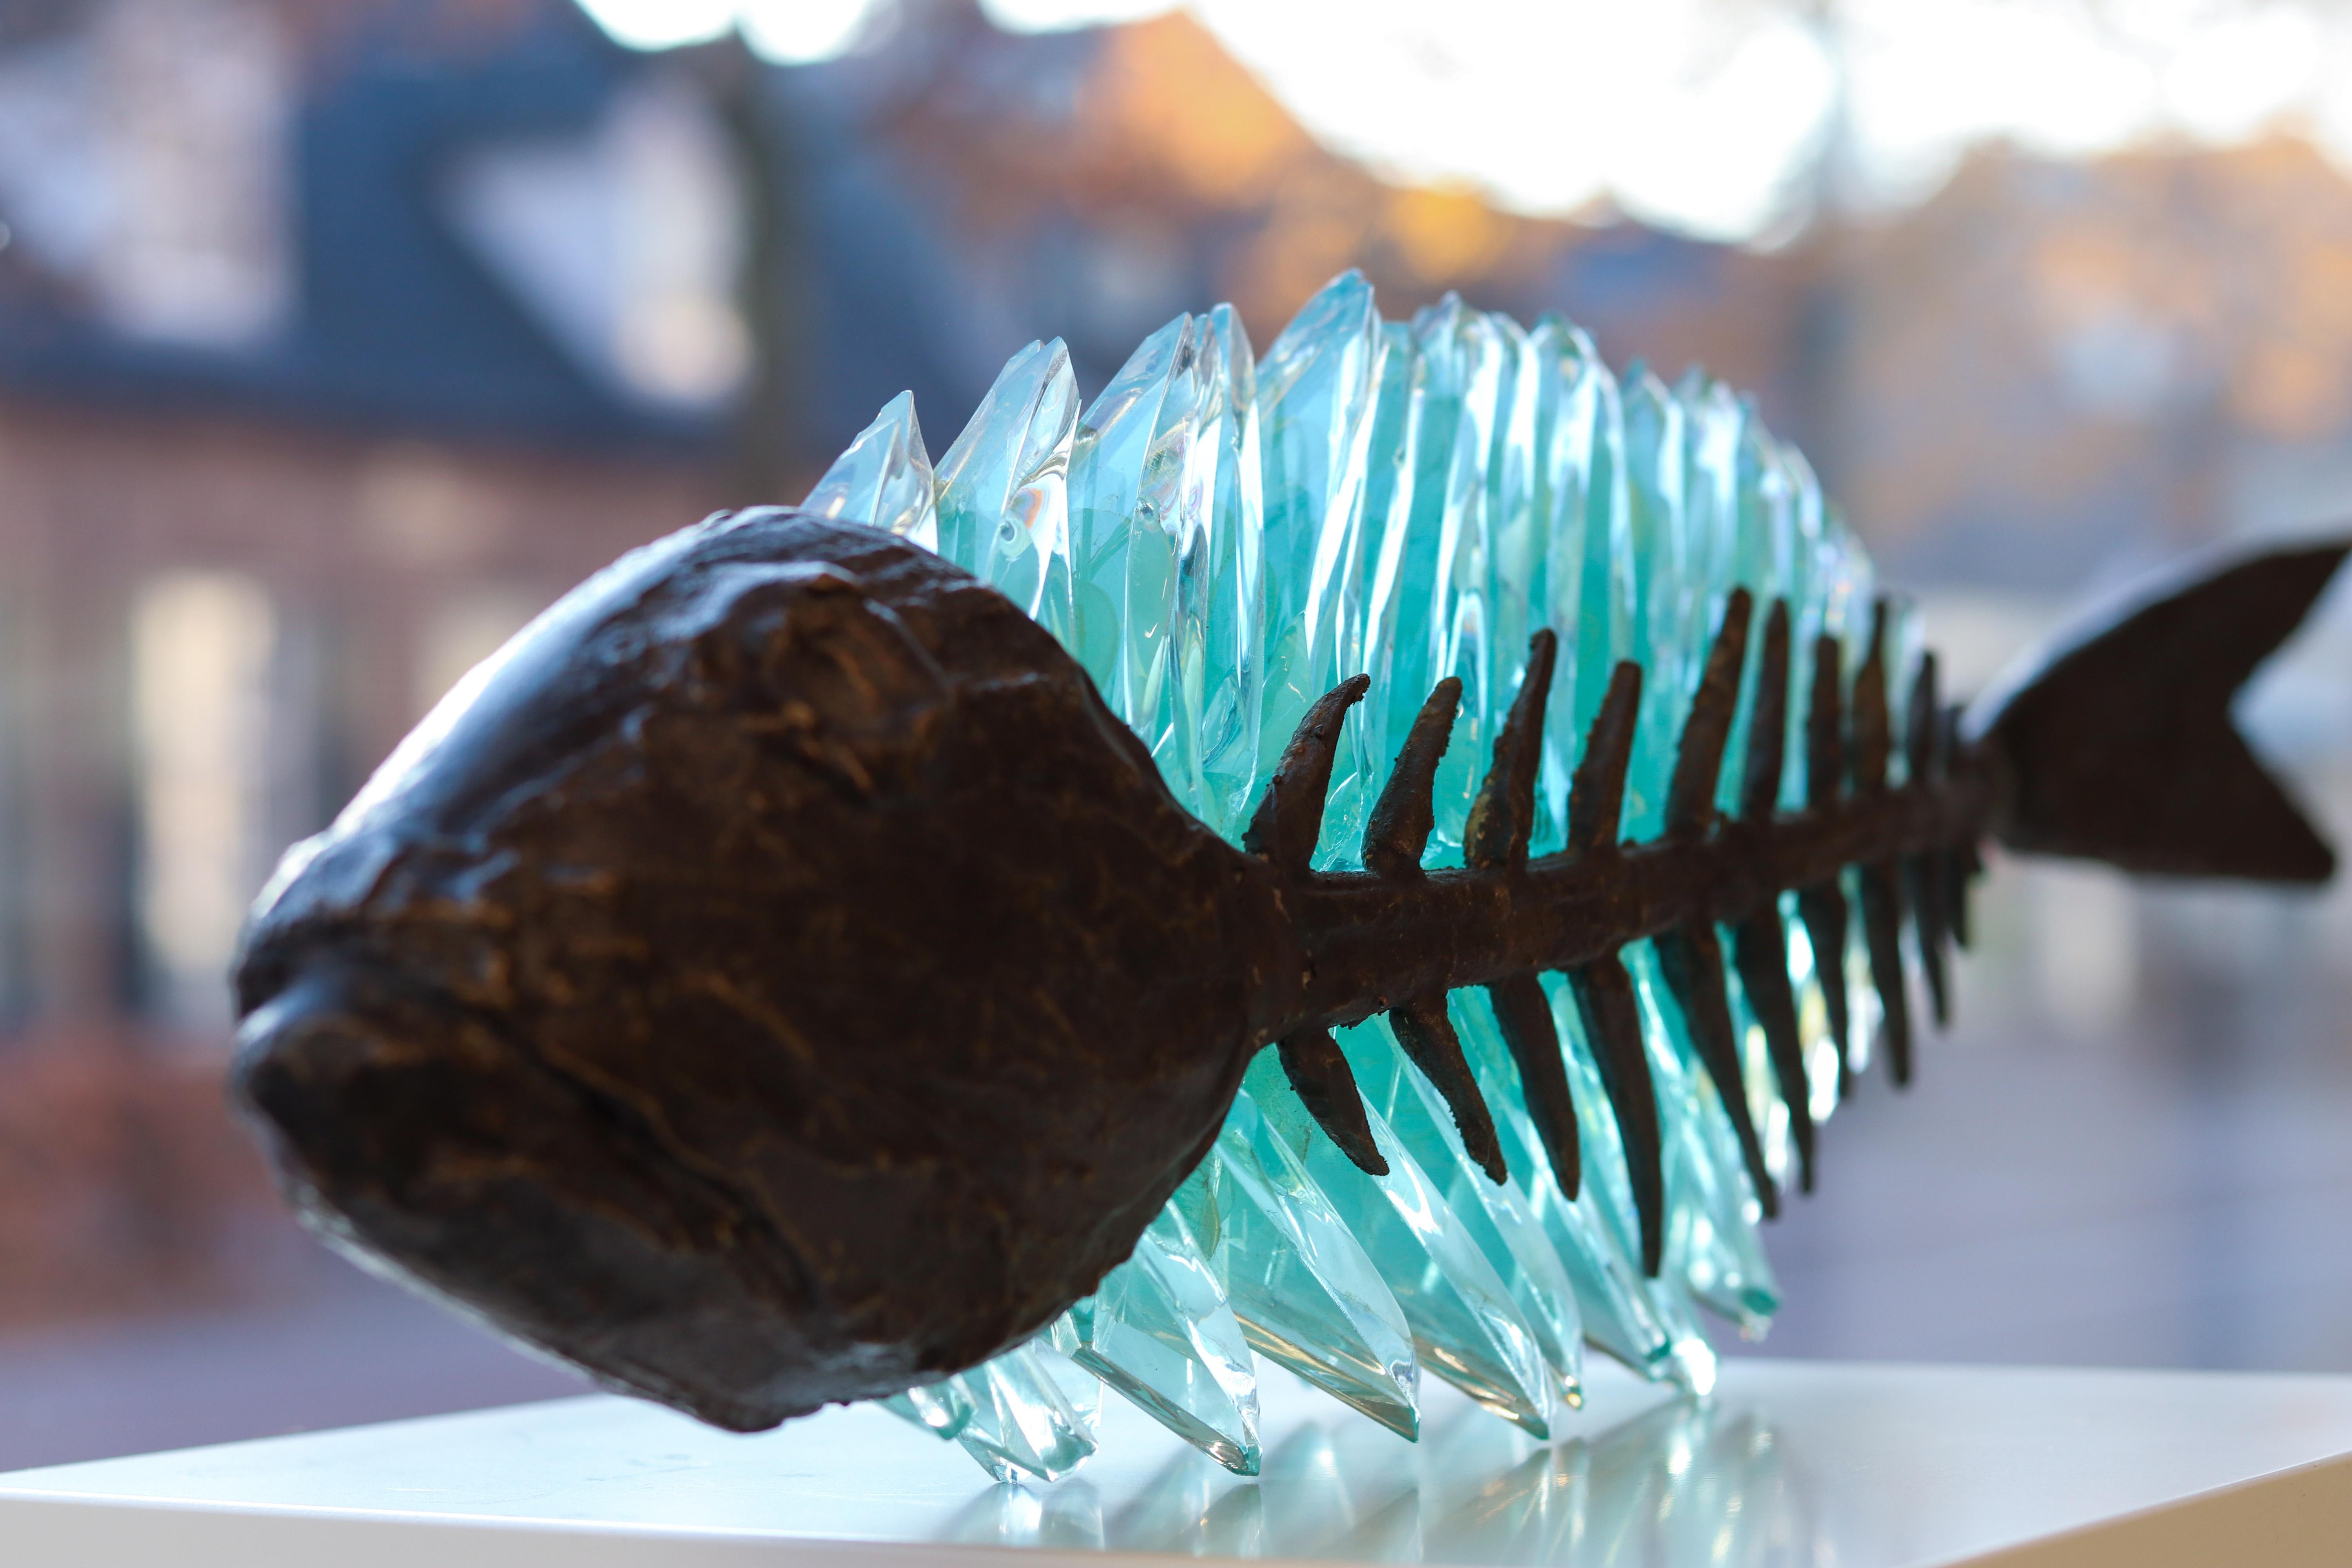 Yorgos Kypris Figurative Sculpture - Entrapped fish - Barracuda, 21st Century Contemporary Sculpture by Yrgos Kypris